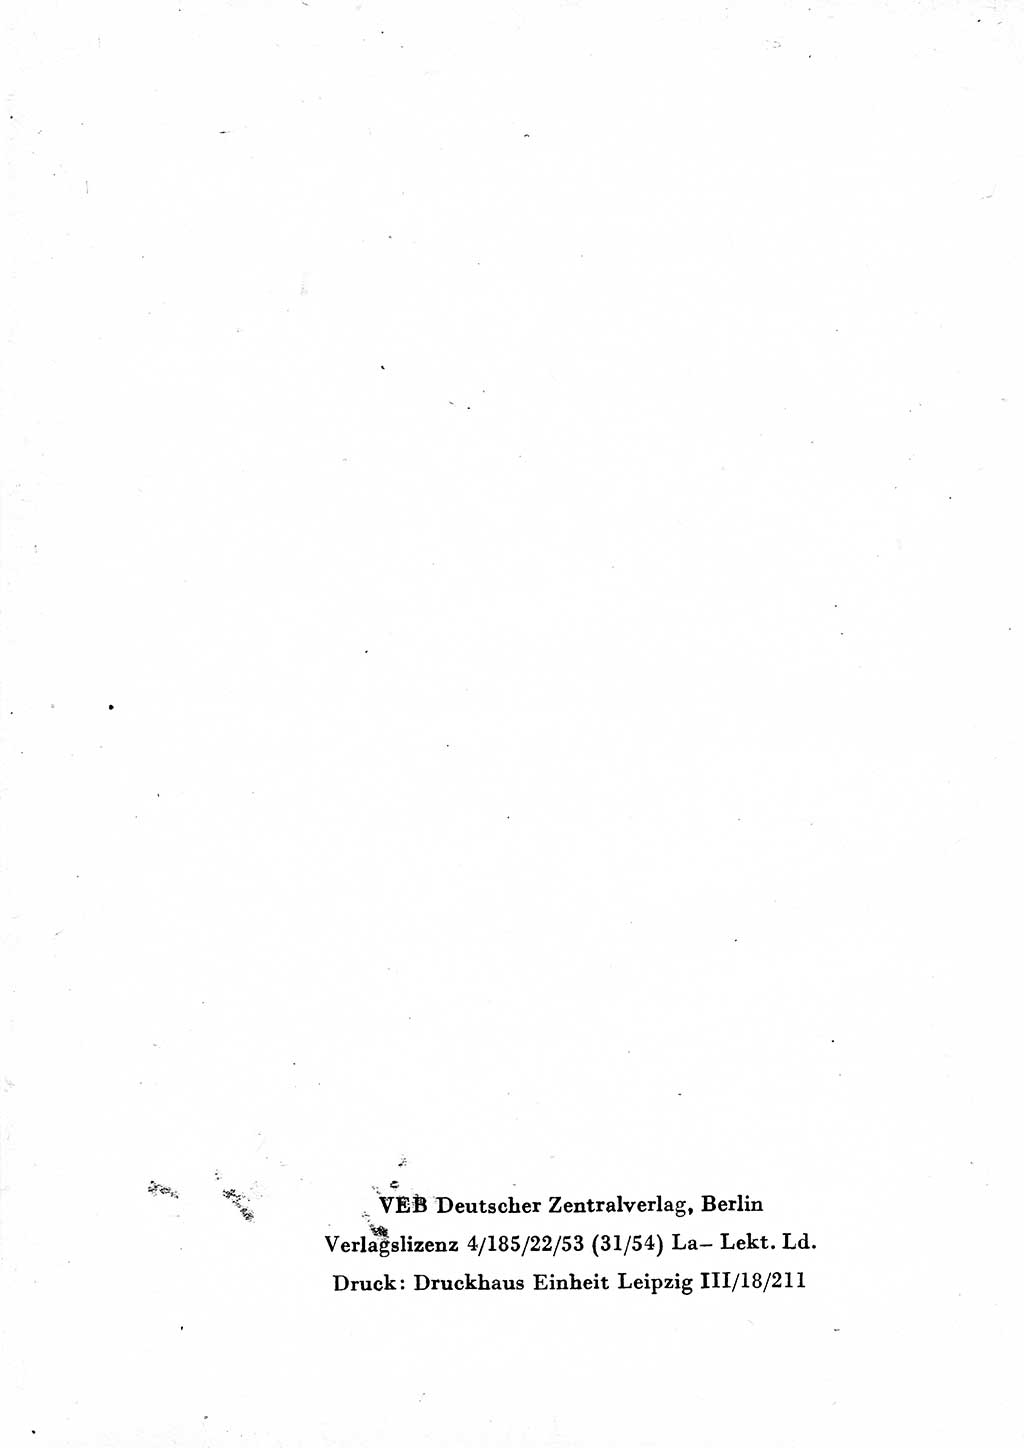 Einleitung Strafgesetzbuch (StGB) und andere Strafgesetze [Deutsche Demokratische Republik (DDR)] 1954, Seite 4 (Einl. StGB Strafges. DDR 1954, S. 4)